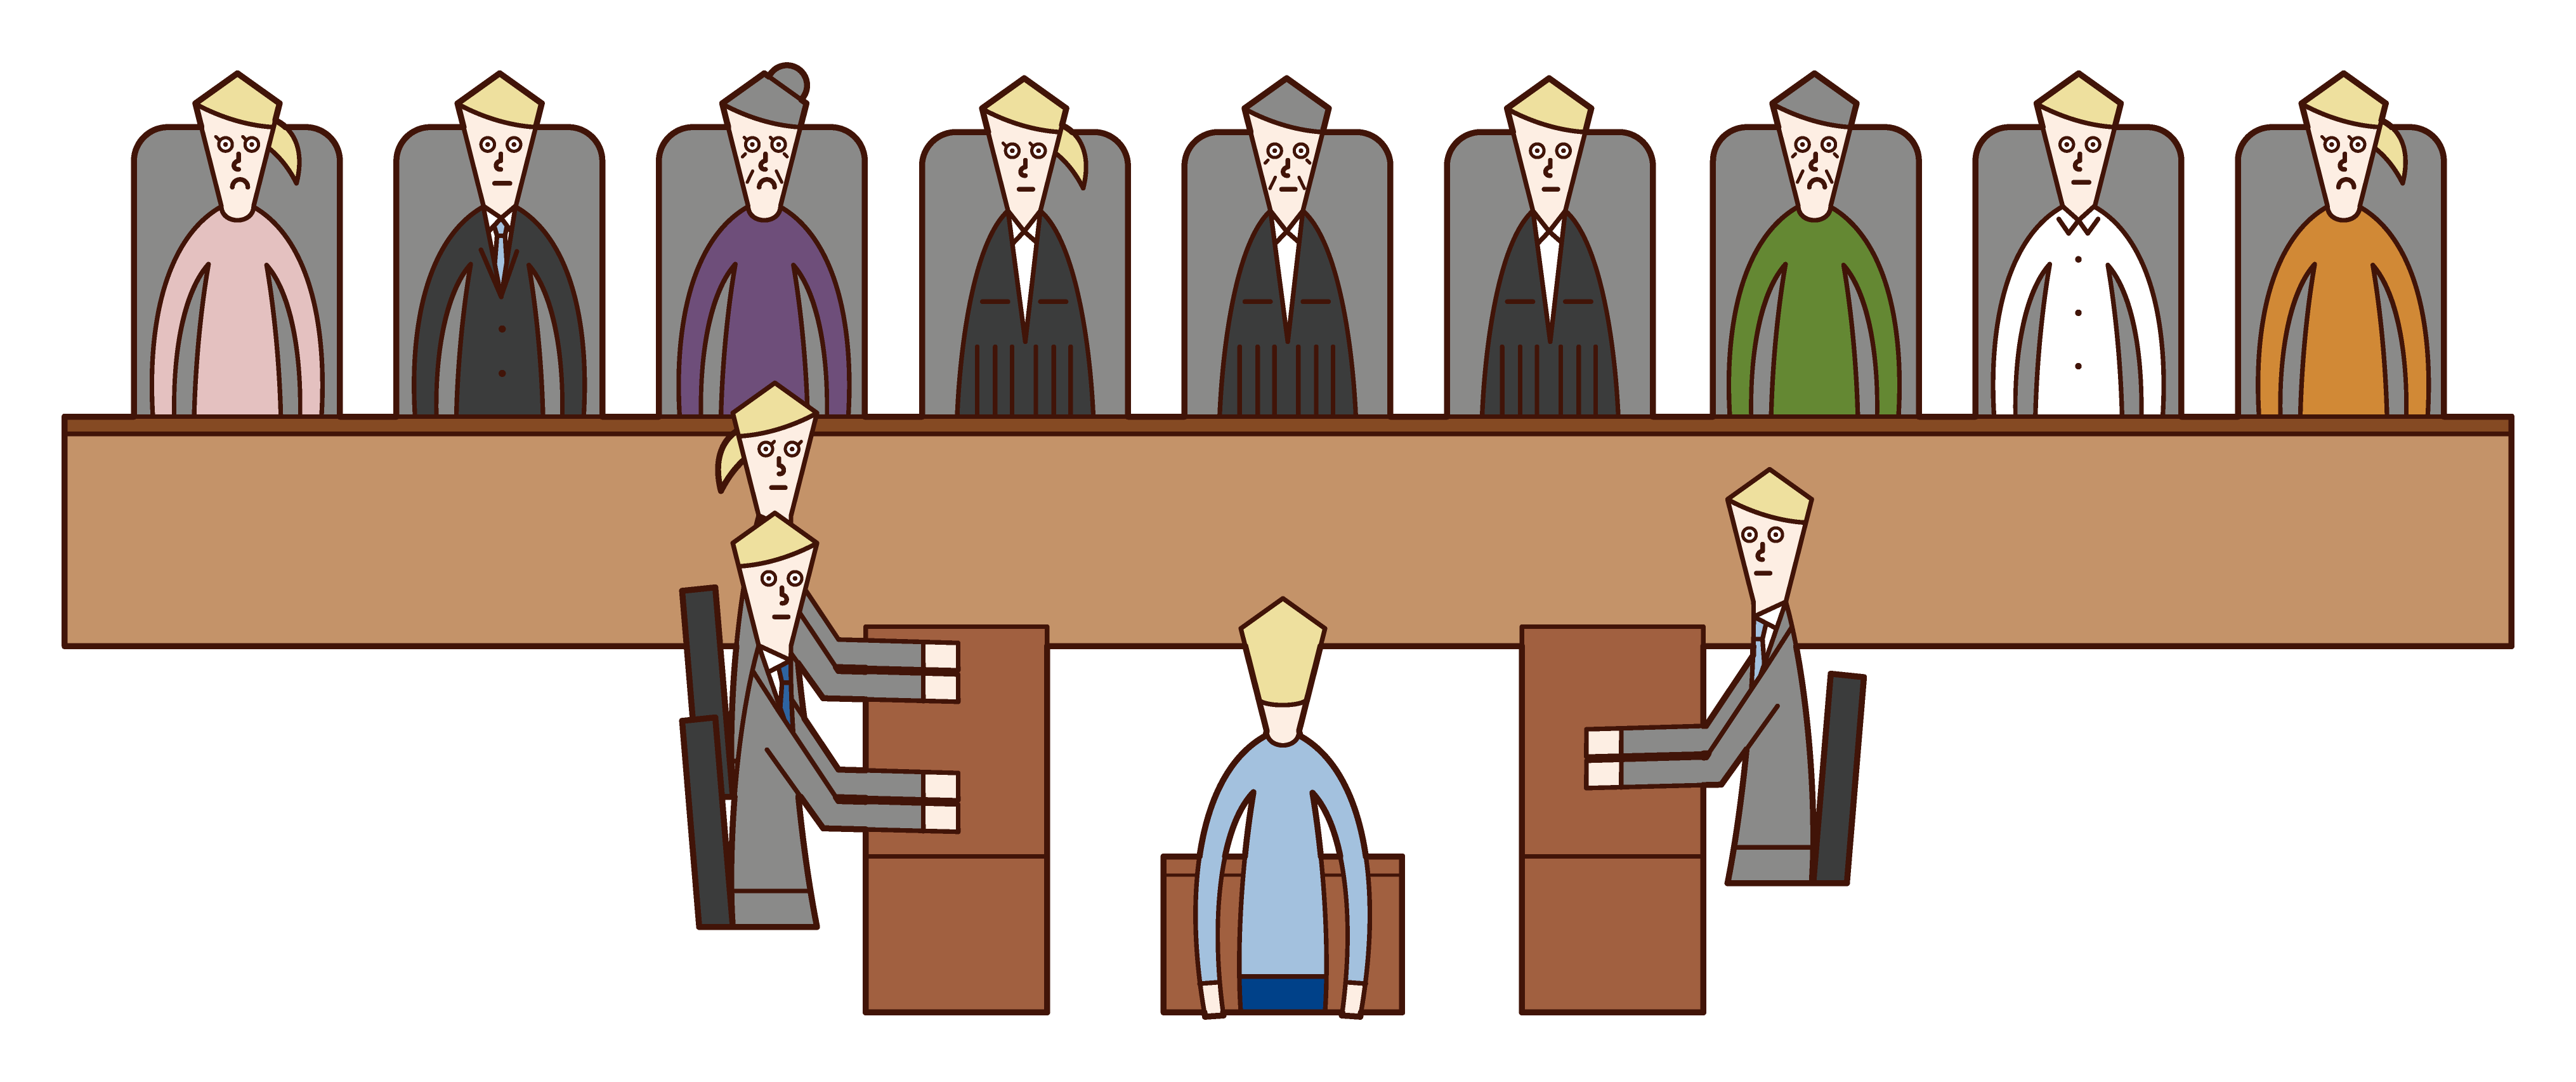 판사 제도의 삽화